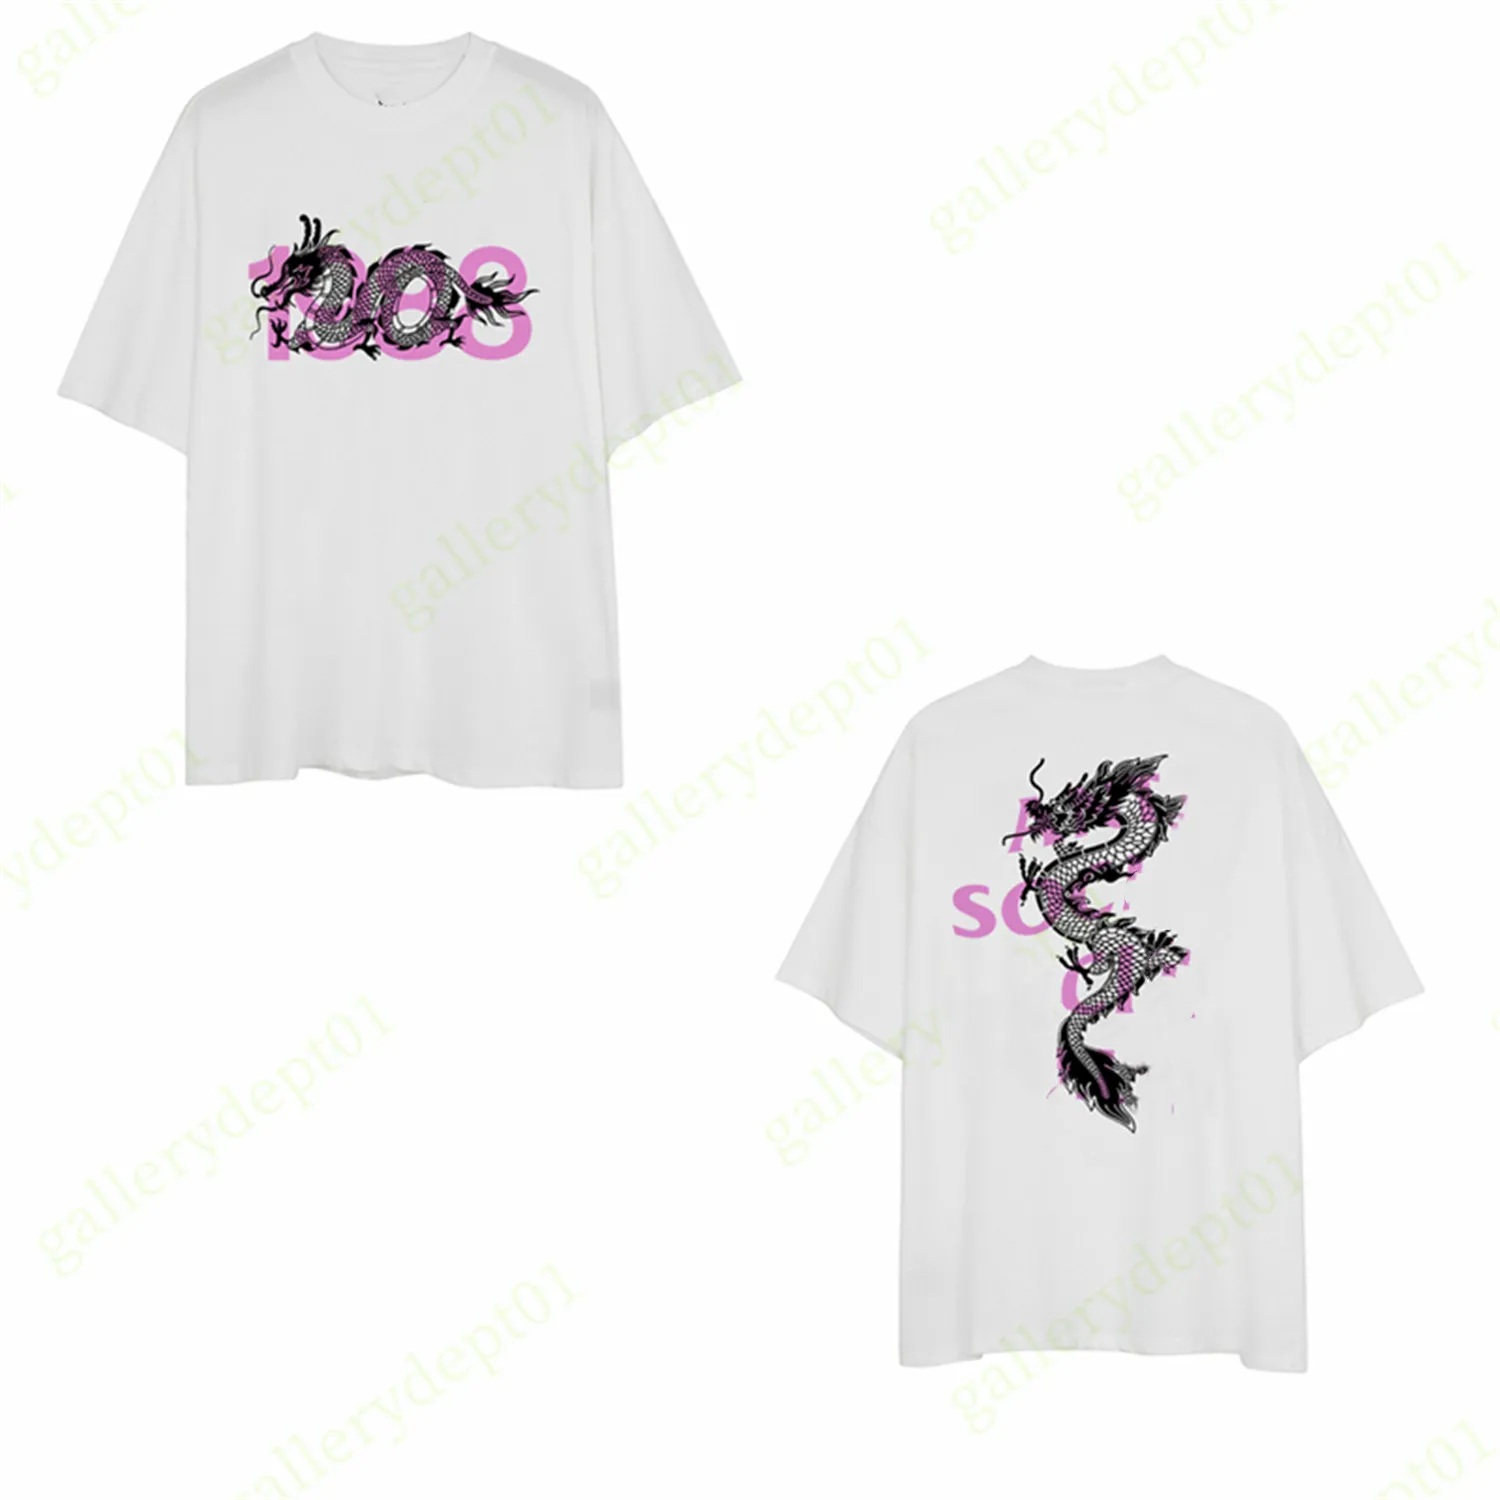 модная мужская футболка дизайнерские футболки хип-хоп веселая одежда с принтом футболка графические футболки цветная женская футболка с английским алфавитом высокого качества негабаритная гибкая рубашка B